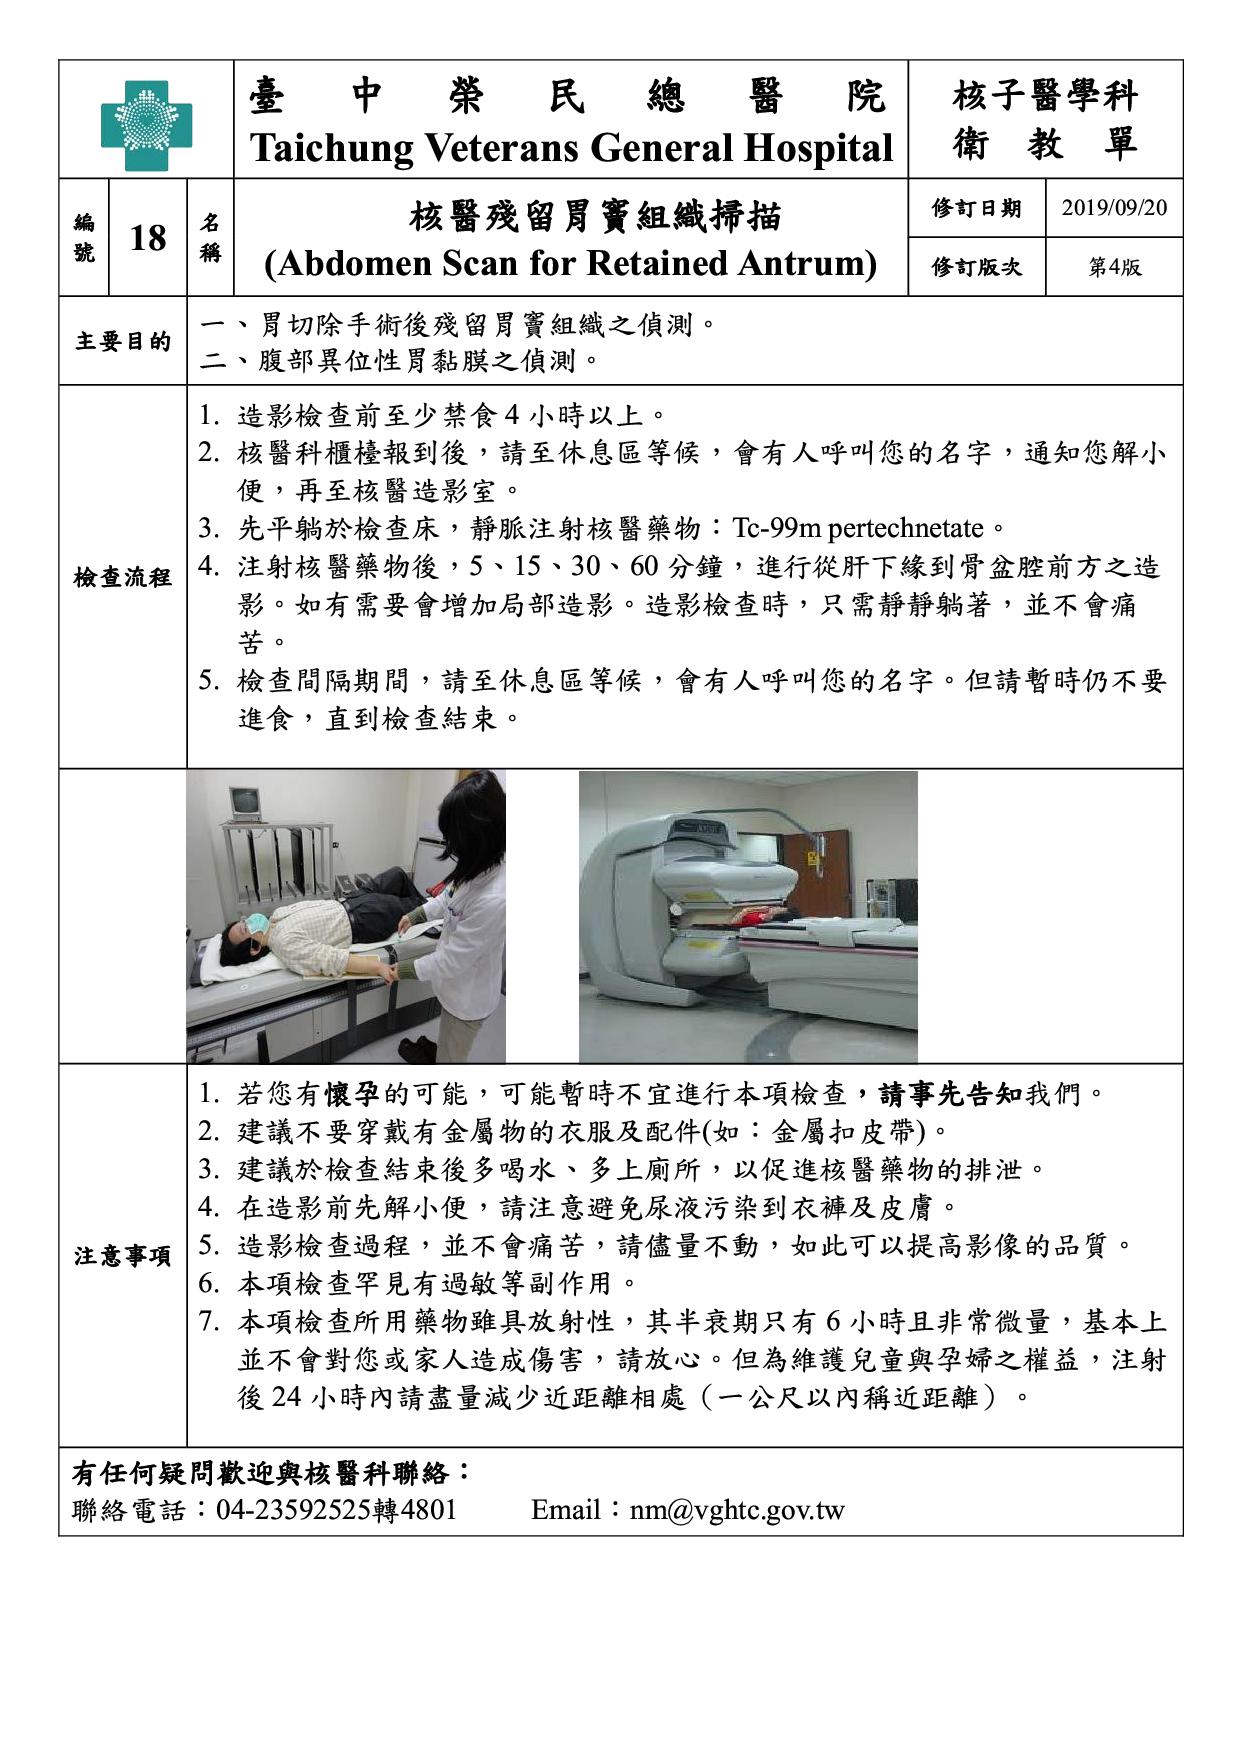 衛-18-核醫殘留胃竇組織掃描(4)(20190920)